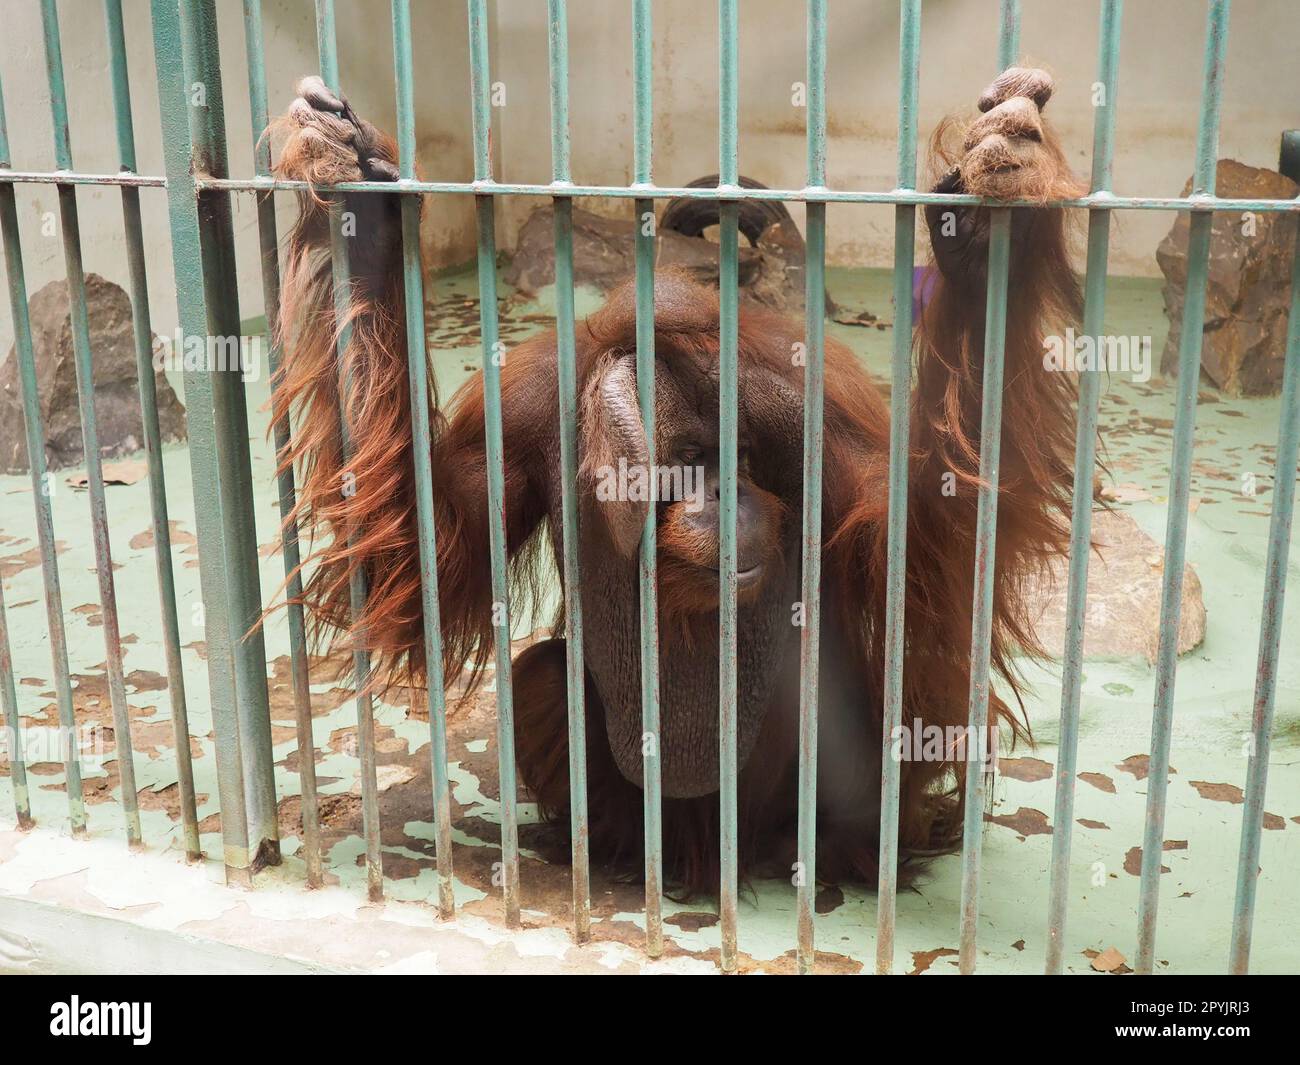 triste orang-outan derrière les barreaux. Orangs-outans, orang-utan - homme de forêt, Pongo - genre de singes arboricoles, l'un des plus proches de l'homme en homologie d'ADN Banque D'Images